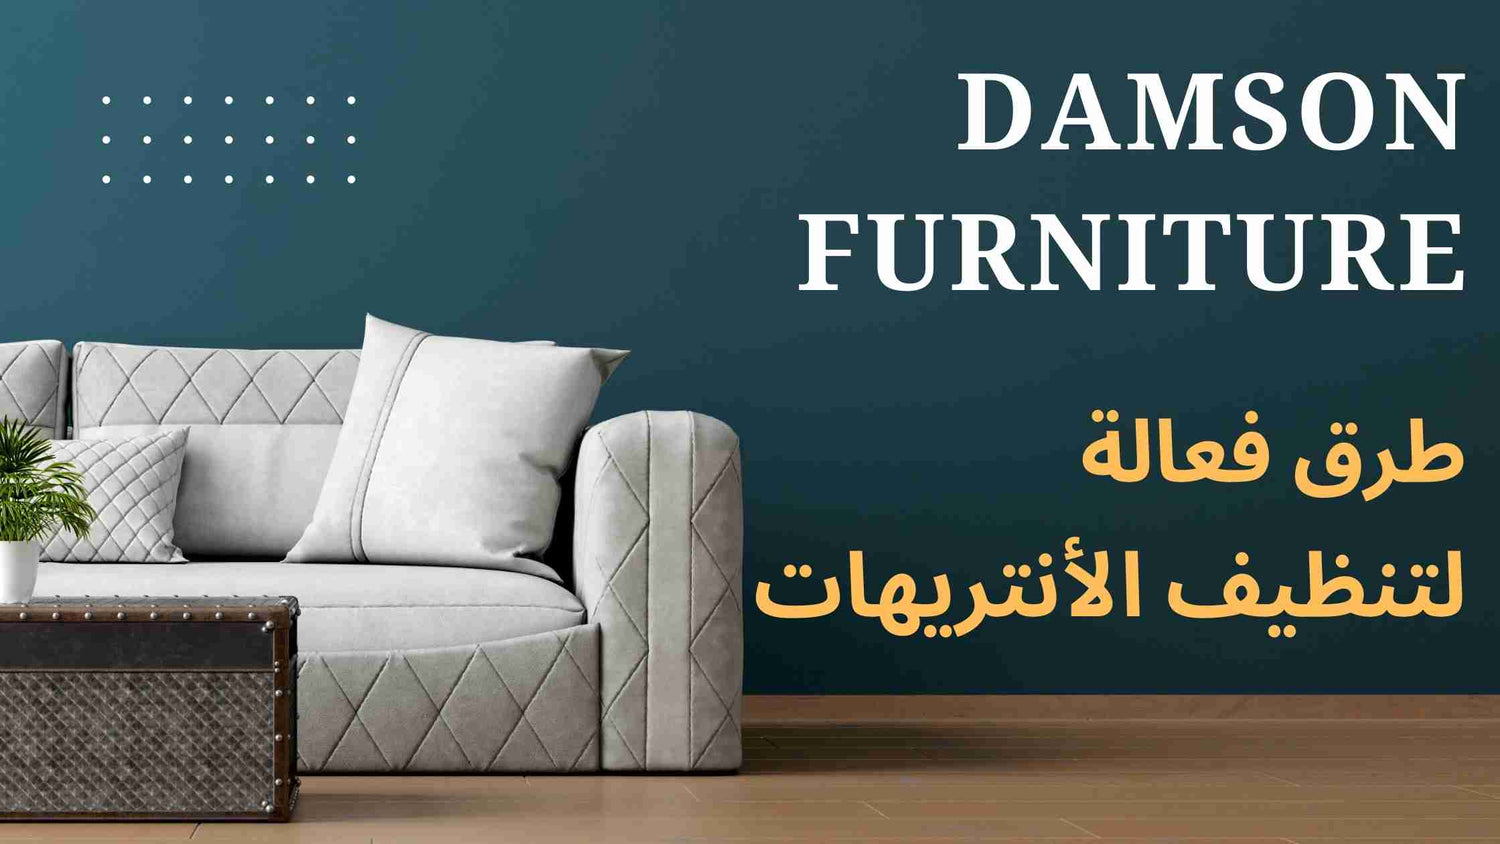 تنظيف الأنتريهات - Damson Furniture